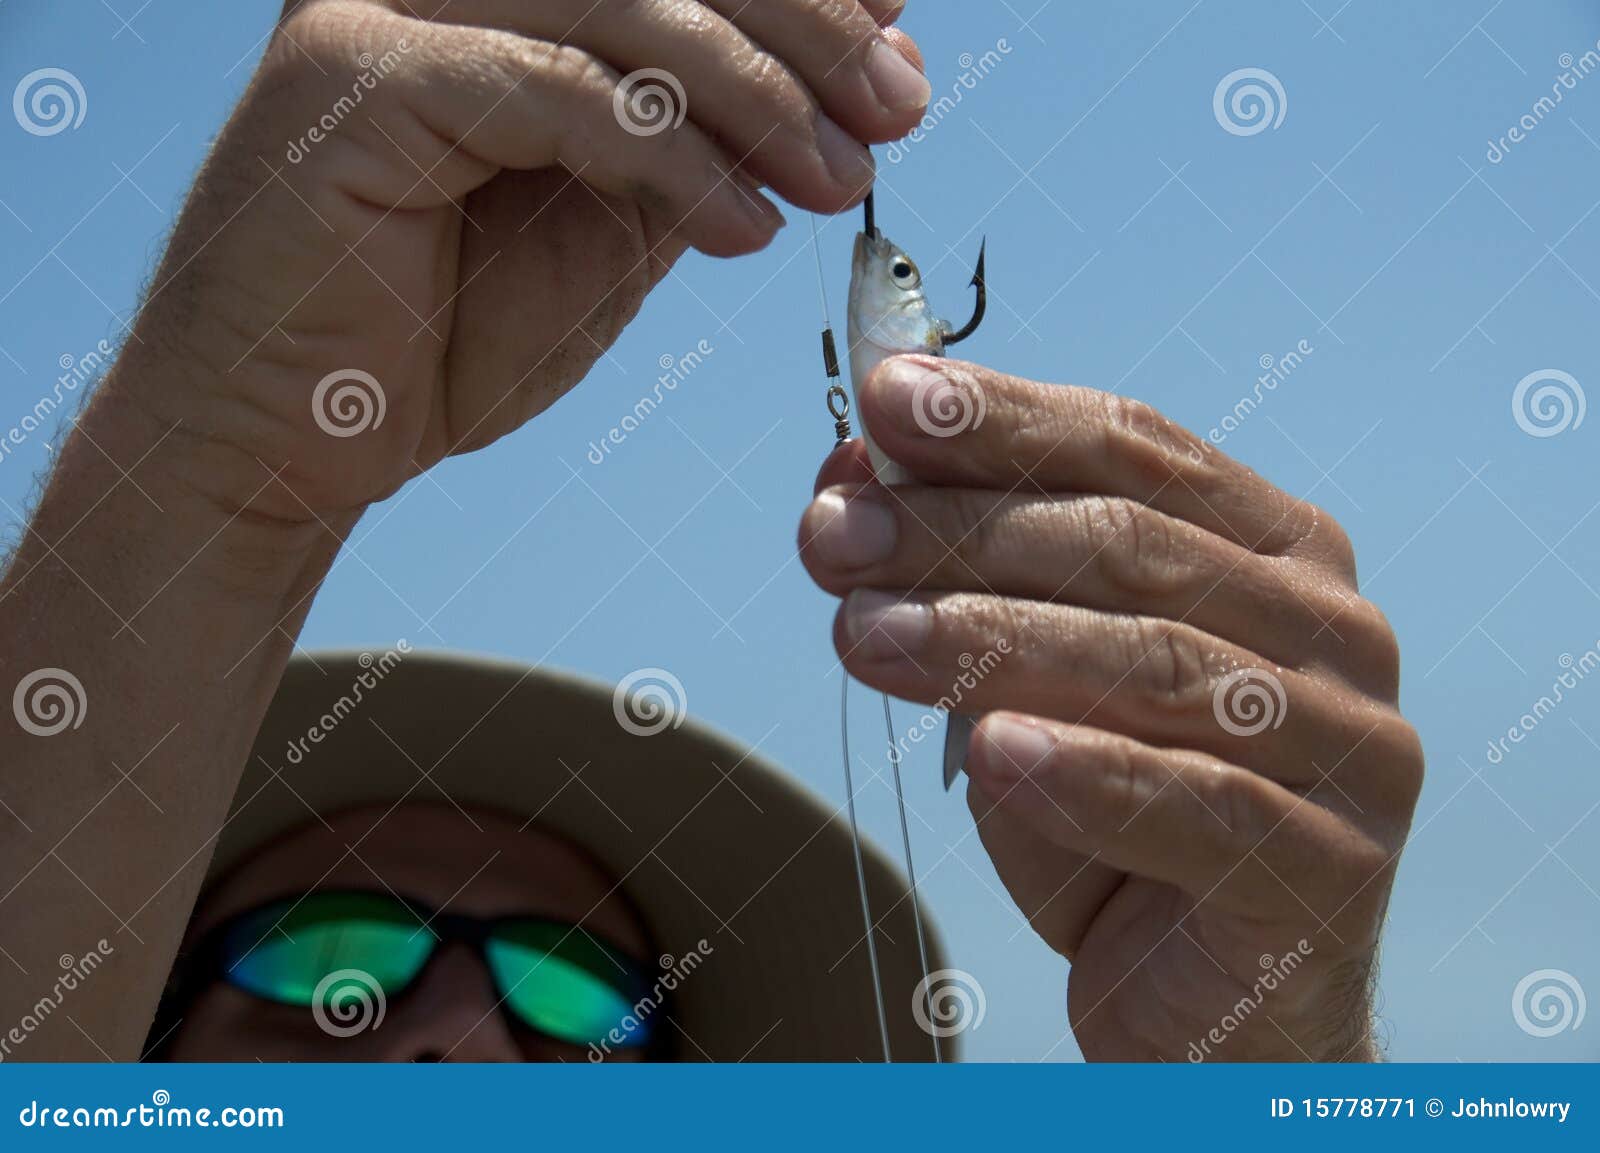 baiting-hook-15778771.jpg